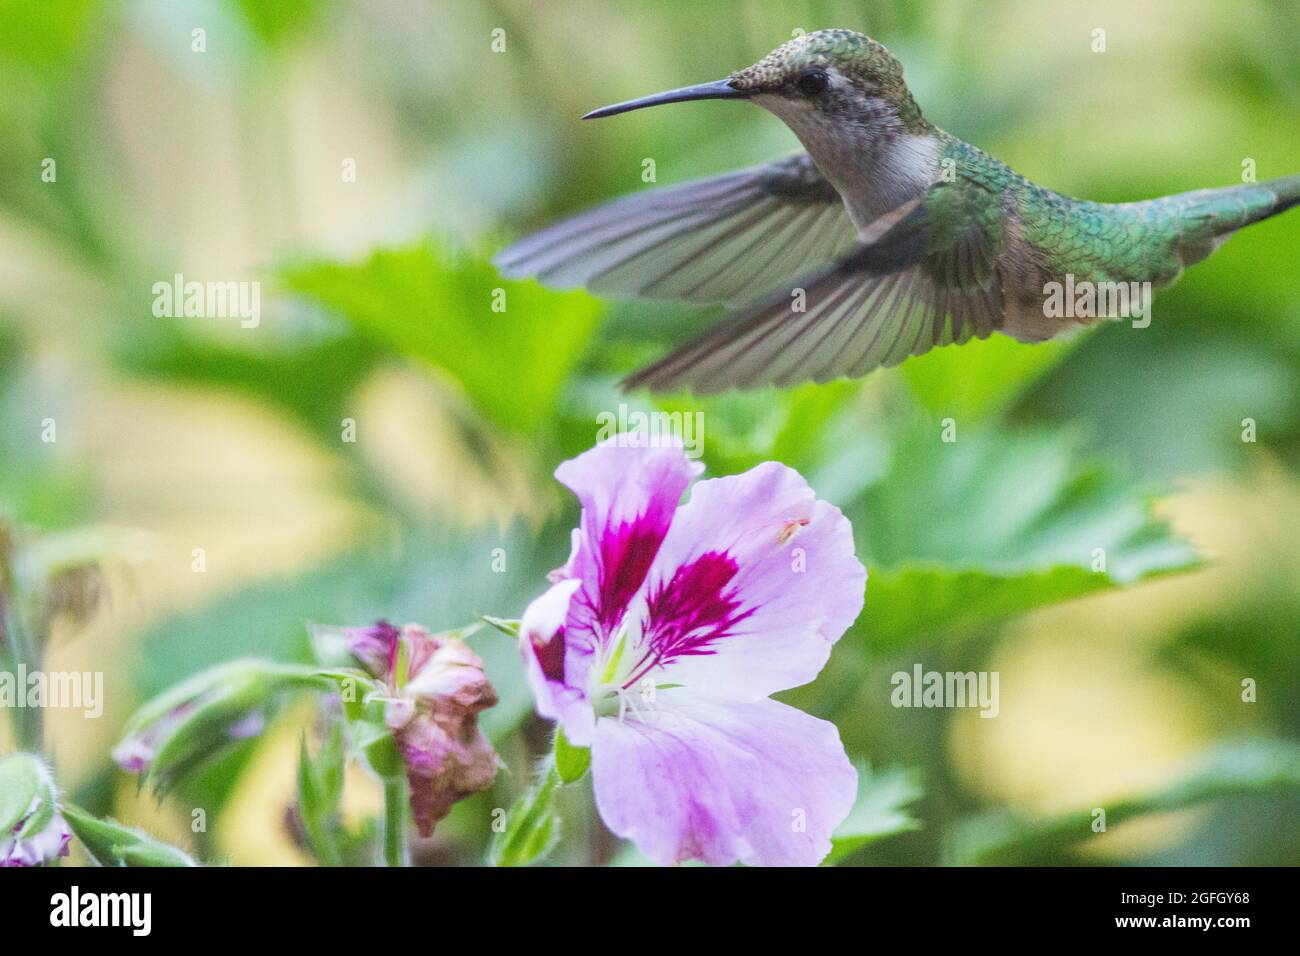 Un colibri à gorge rubis vole sur les fleurs les regardant plus. Image figée d'action rapide avec ailes déployées. Gros plan. Banque D'Images